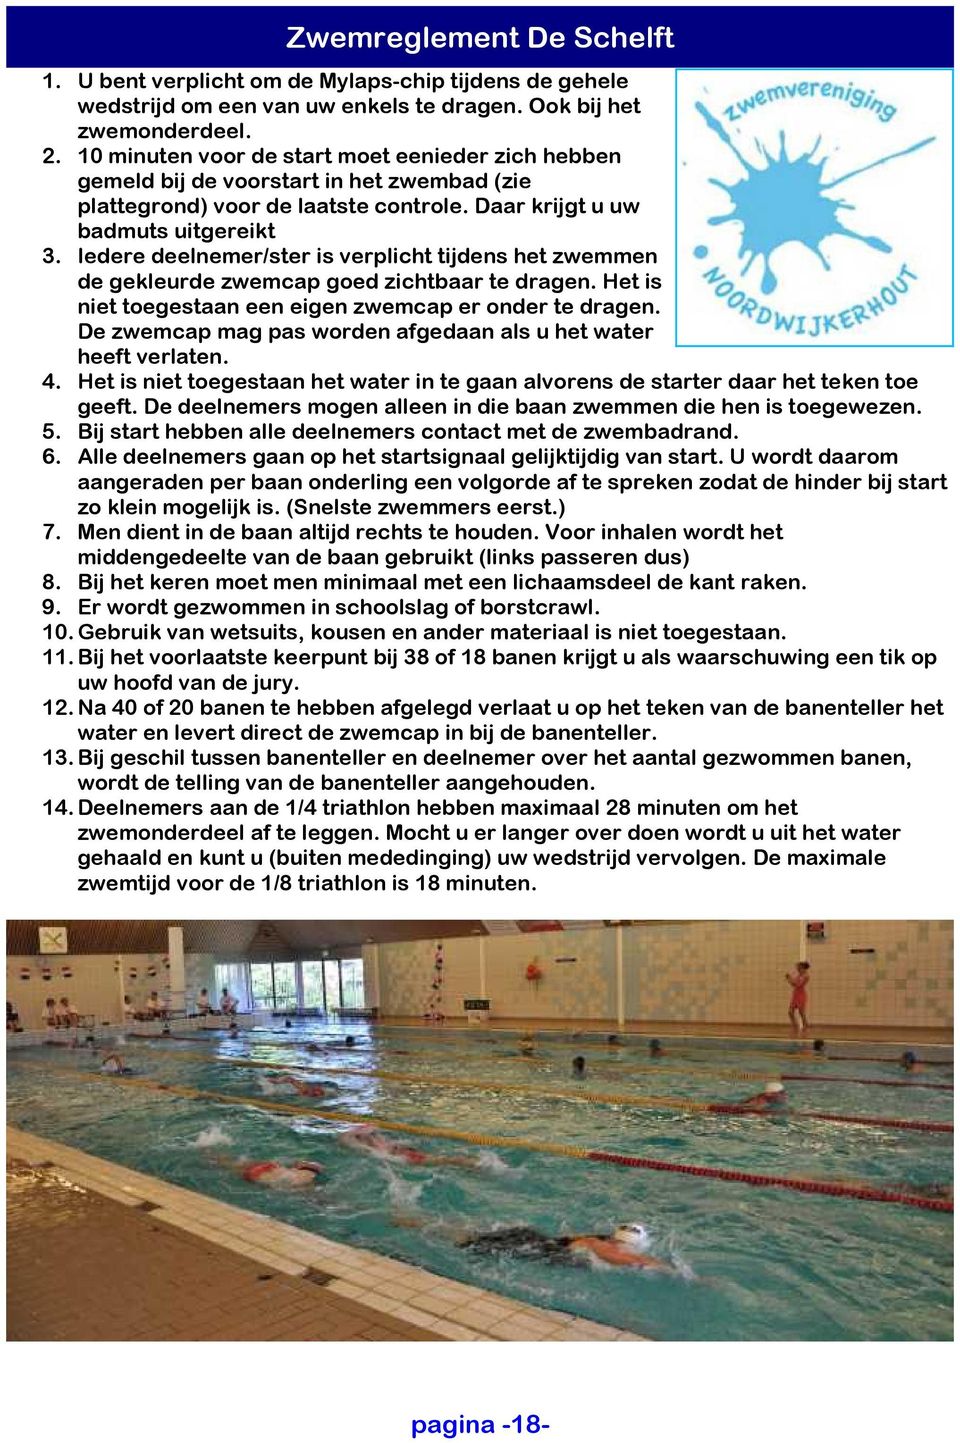 Iedere deelnemer/ster is verplicht tijdens het zwemmen de gekleurde zwemcap goed zichtbaar te dragen. Het is niet toegestaan een eigen zwemcap er onder te dragen.